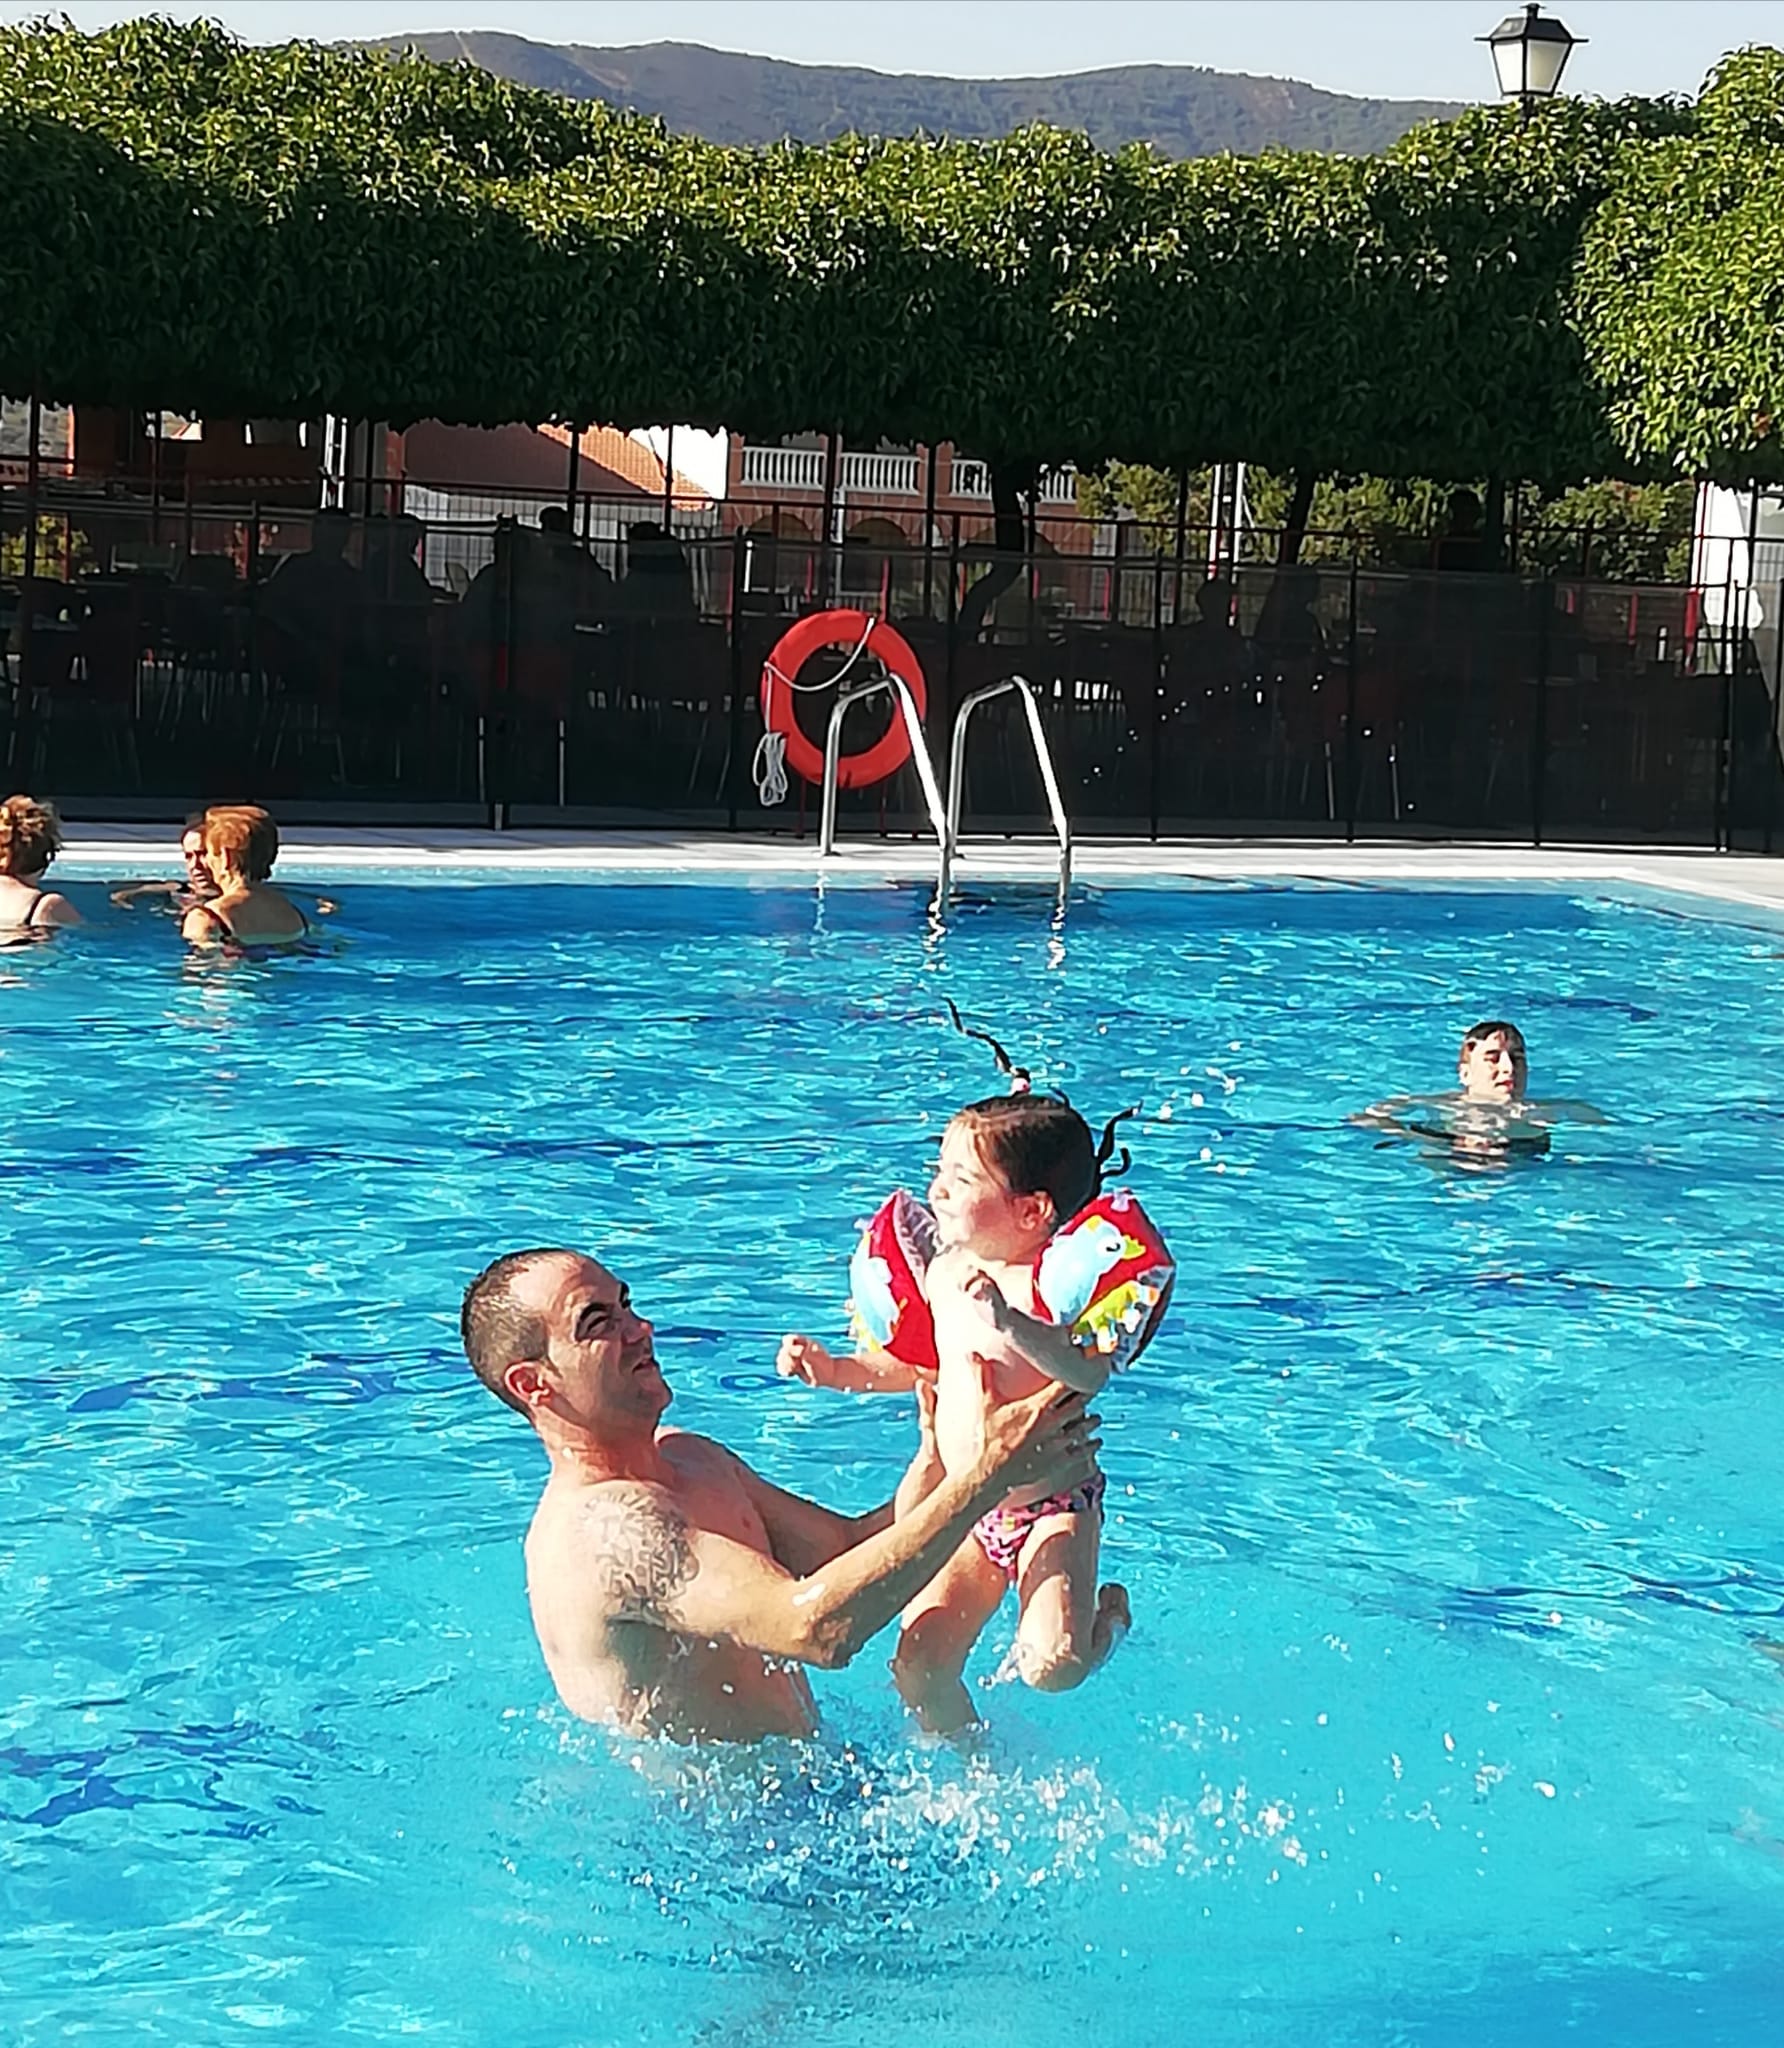 Logrosán podría la única localidad del entorno con piscina abierta | LOGROSÁN AL DÍA